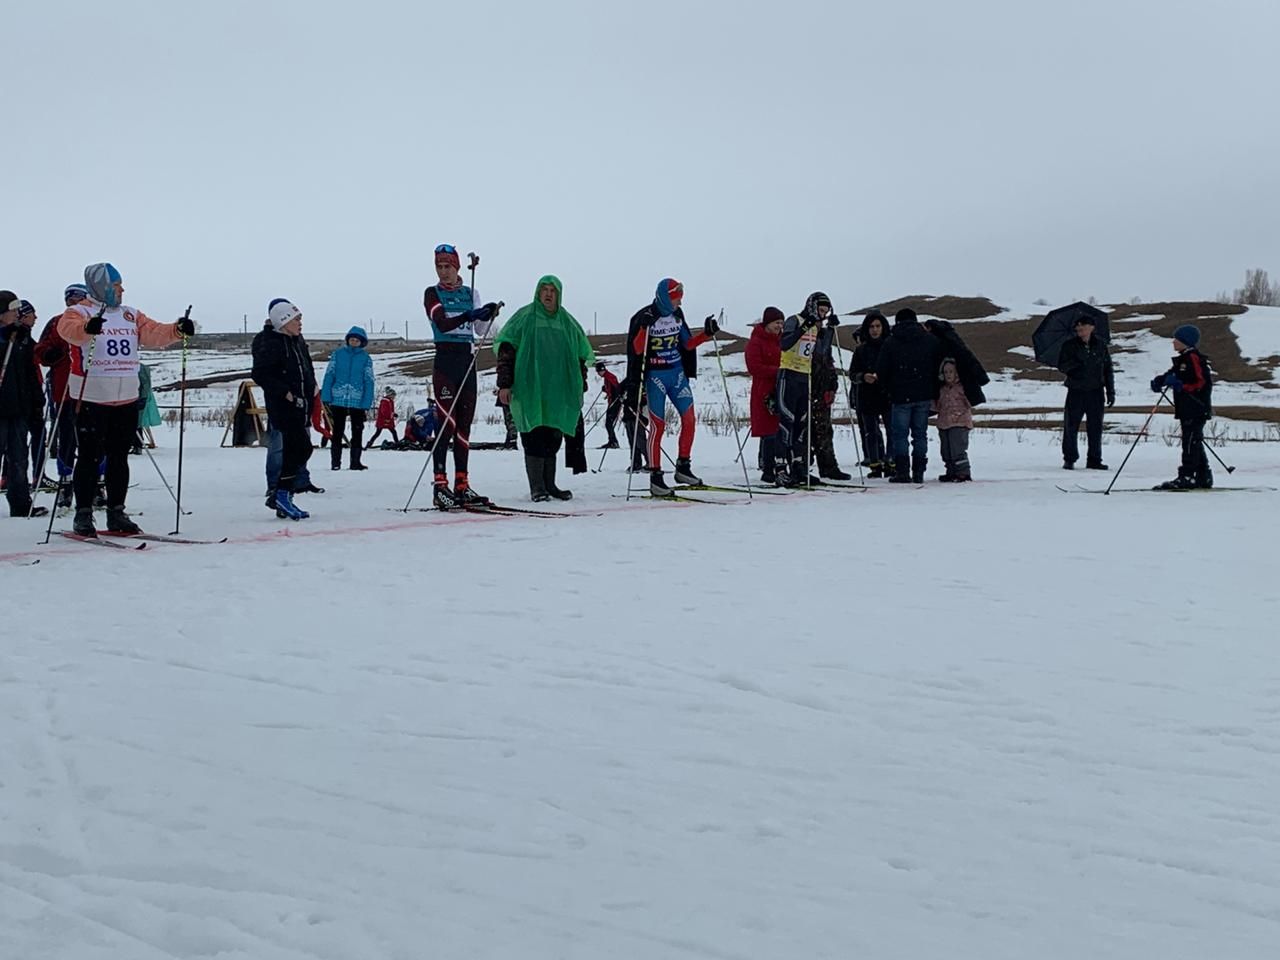 В Аксубаевском районе в Беловке на лыжню встали более 140 спортсменов